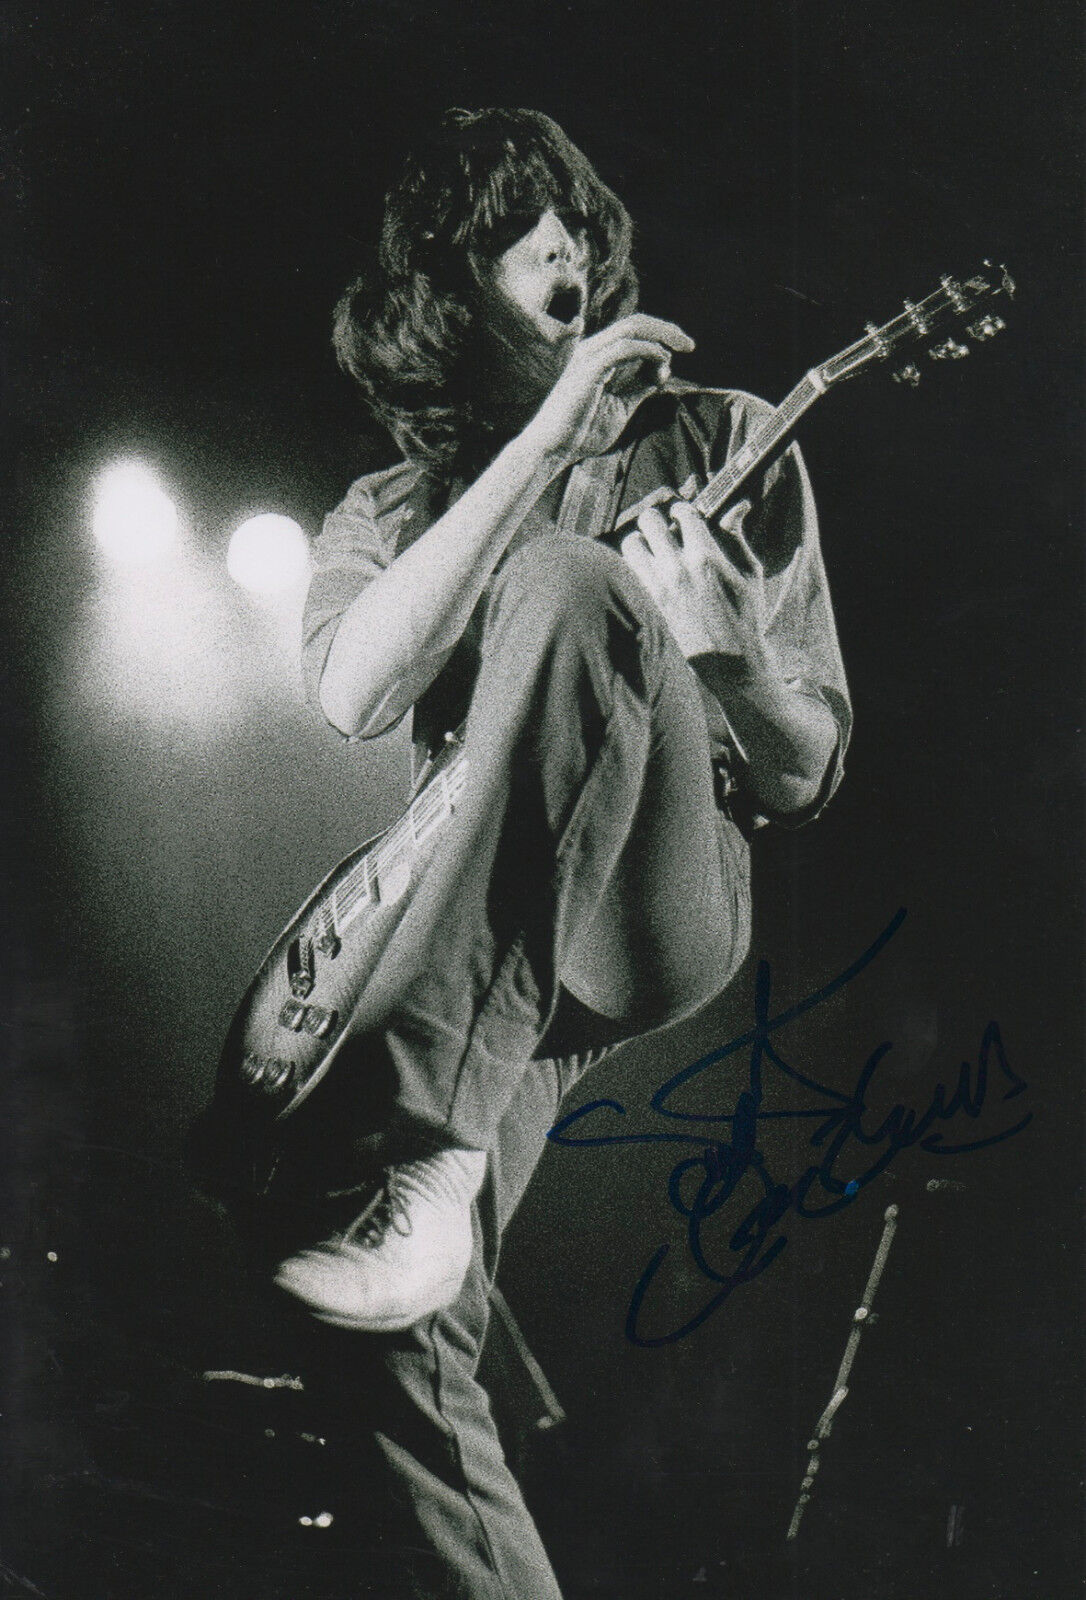 Scott Gorham Thin Lizzy